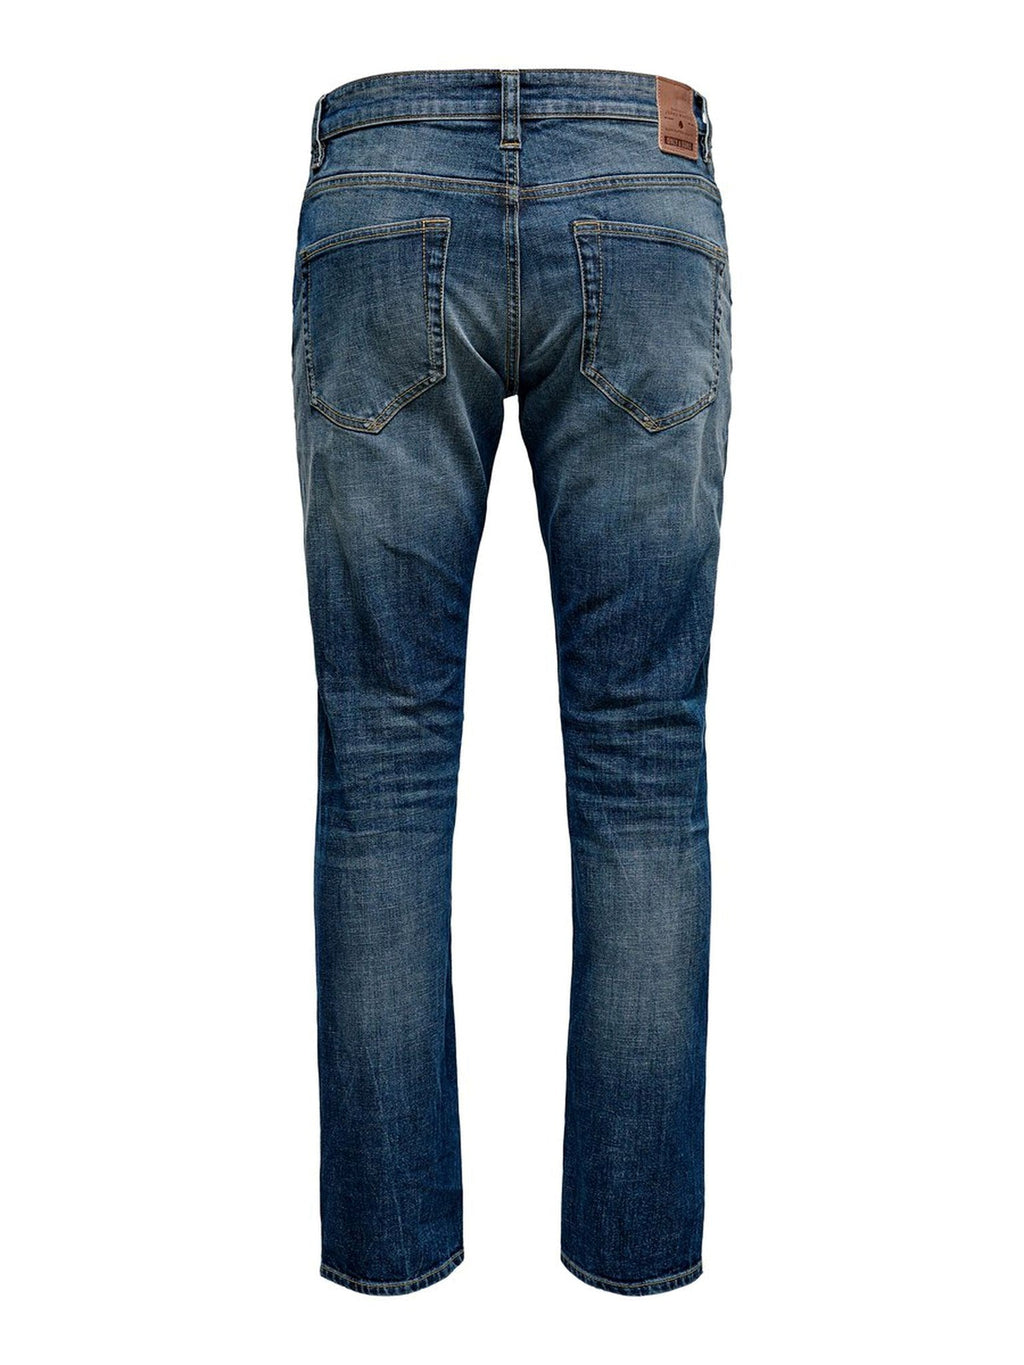 Inslaggewassen jeans - blauwe denim